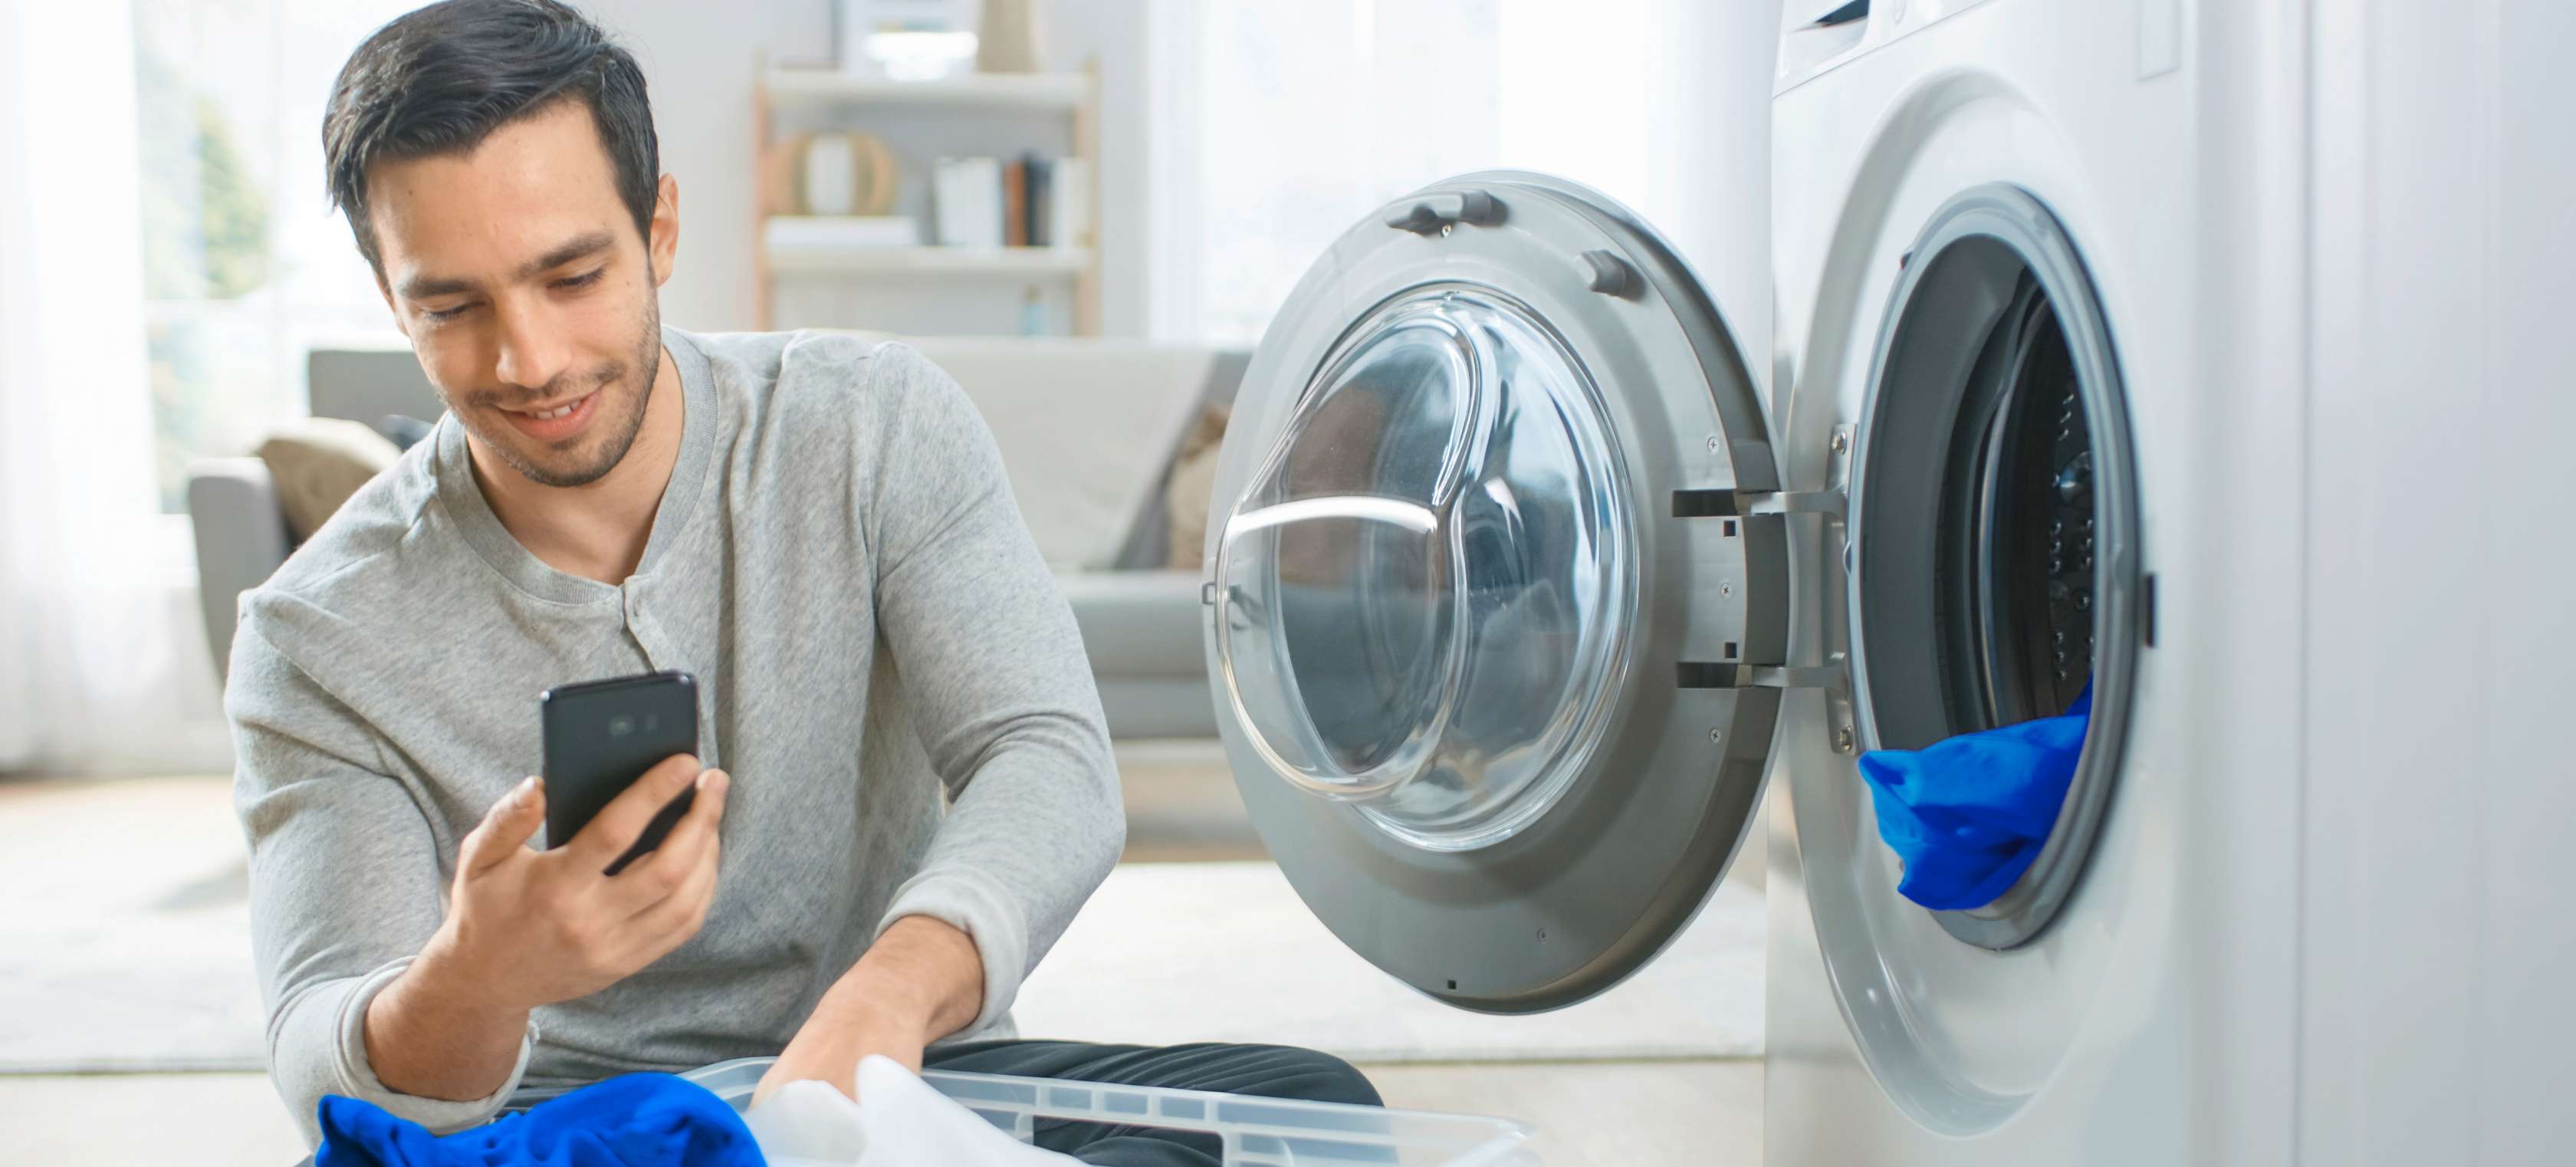 Hausrat-Haftpflicht-Kombi: Ein junger Mann sitzt mit Wäsche vor einer offenen Waschmaschine